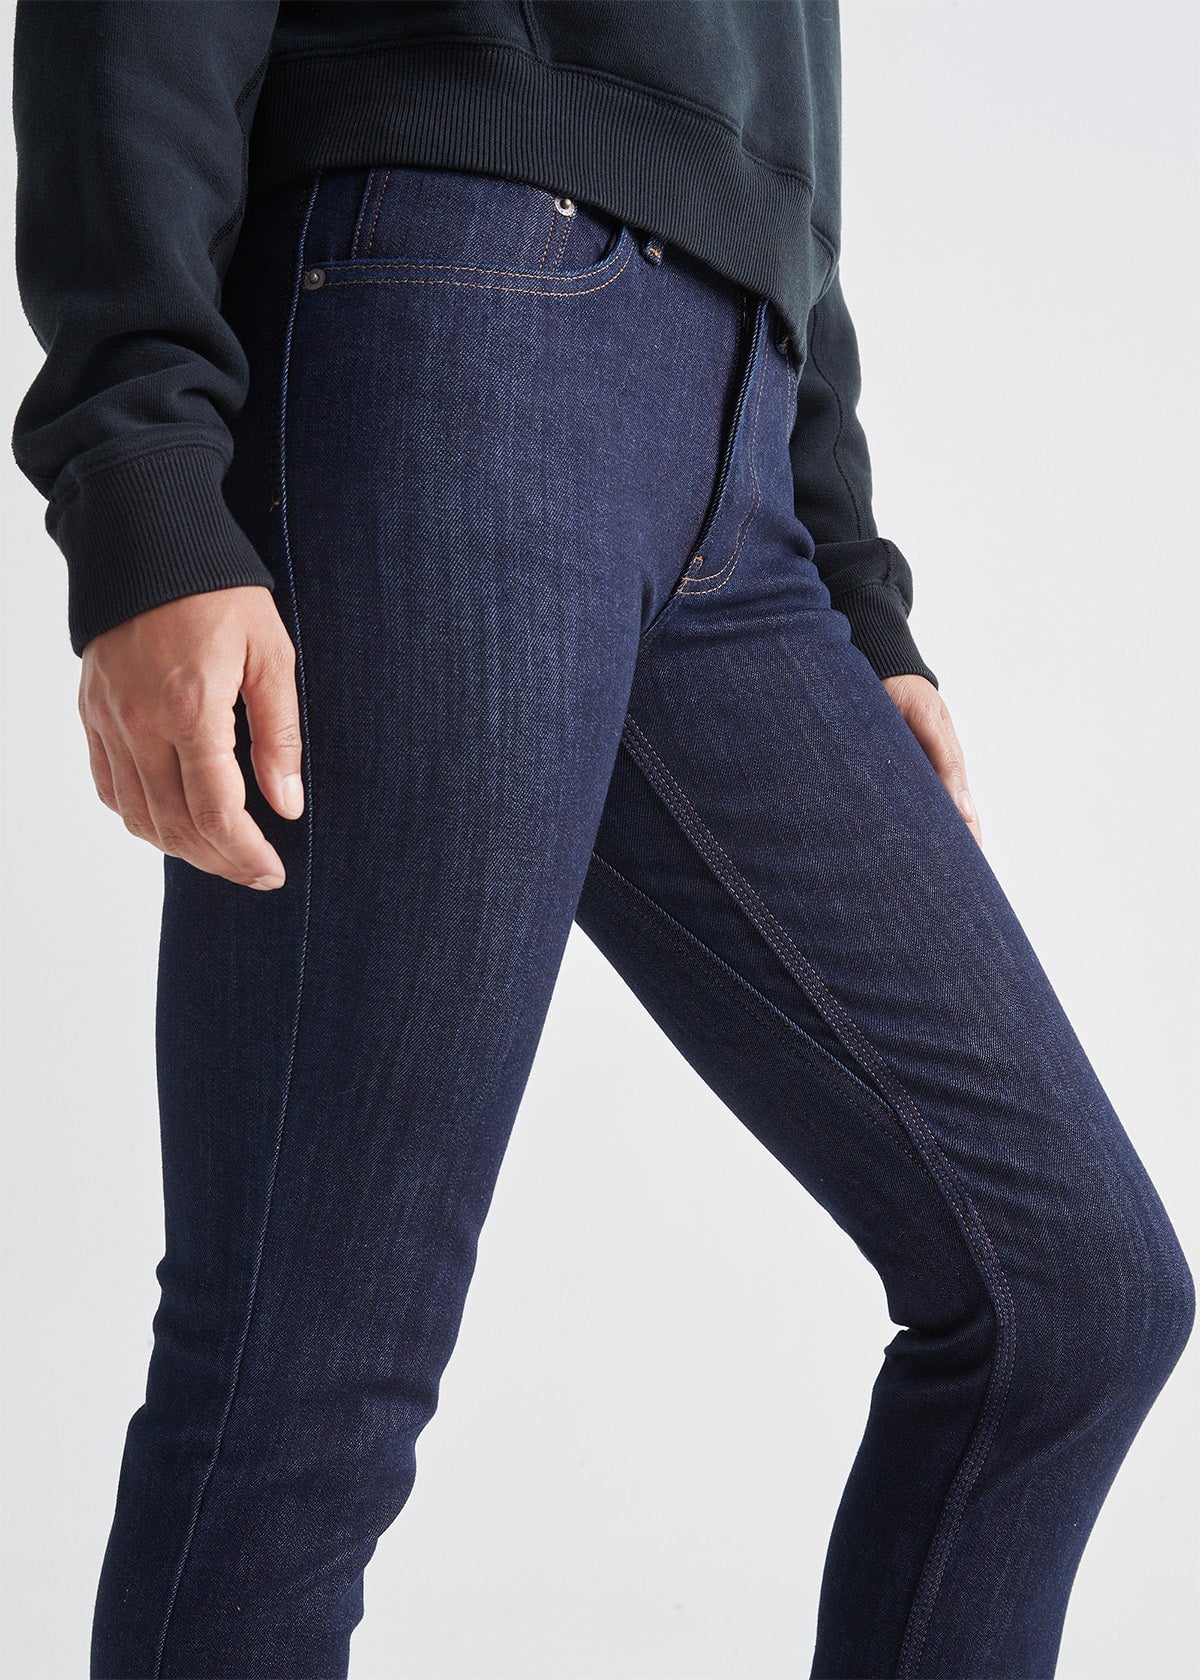 Women's Dark Wash Slim Fit Stretch Fleece-Lined Jeans